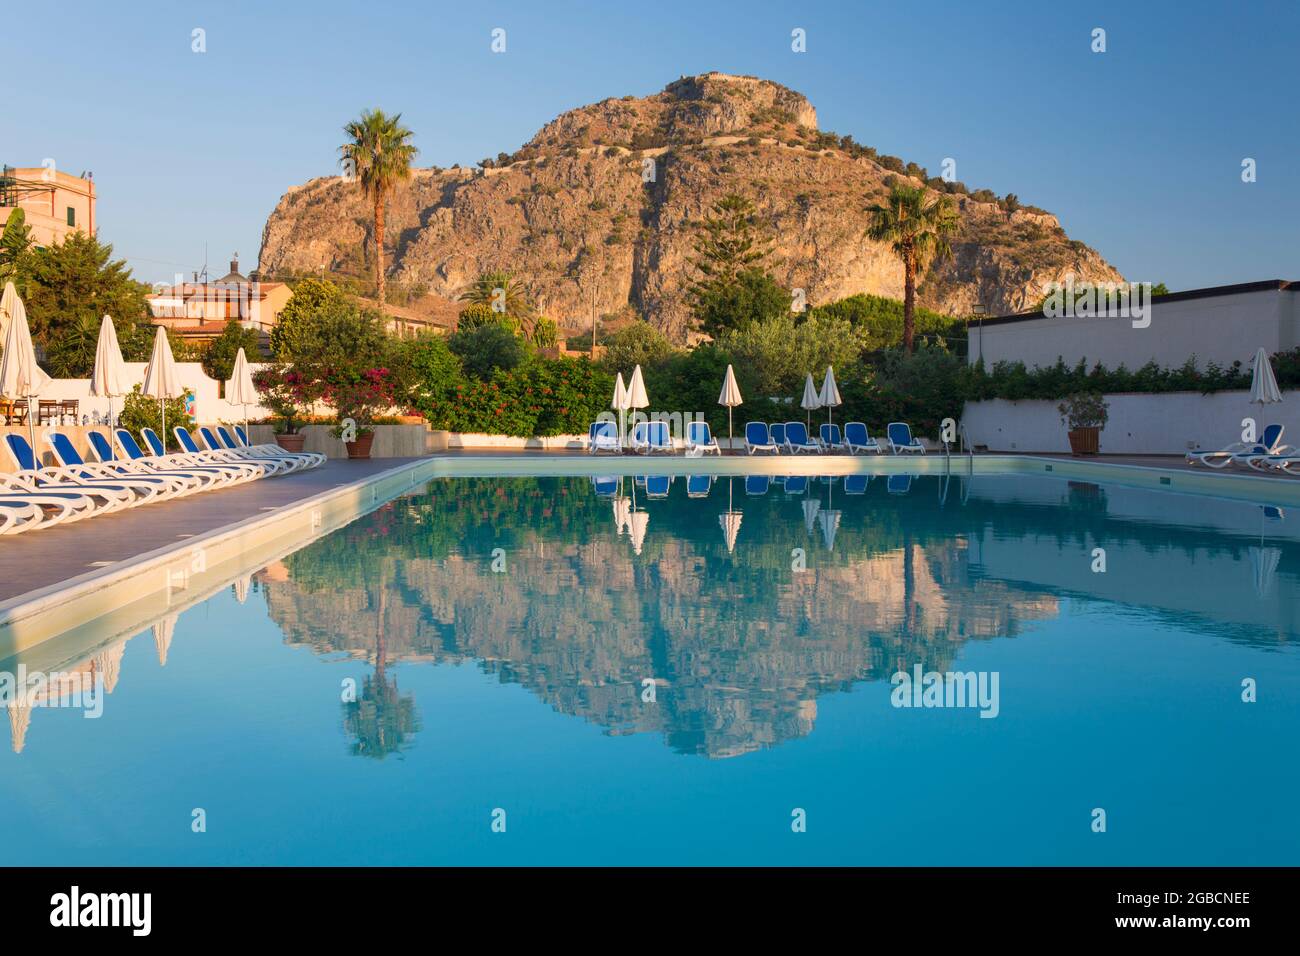 Cefalù, Palermo, Sicilia, Italia. Le torreggianti scogliere illuminate dal sole di la Rocca si riflettono nella tranquilla piscina dell'Hotel Kalura, alba. Foto Stock